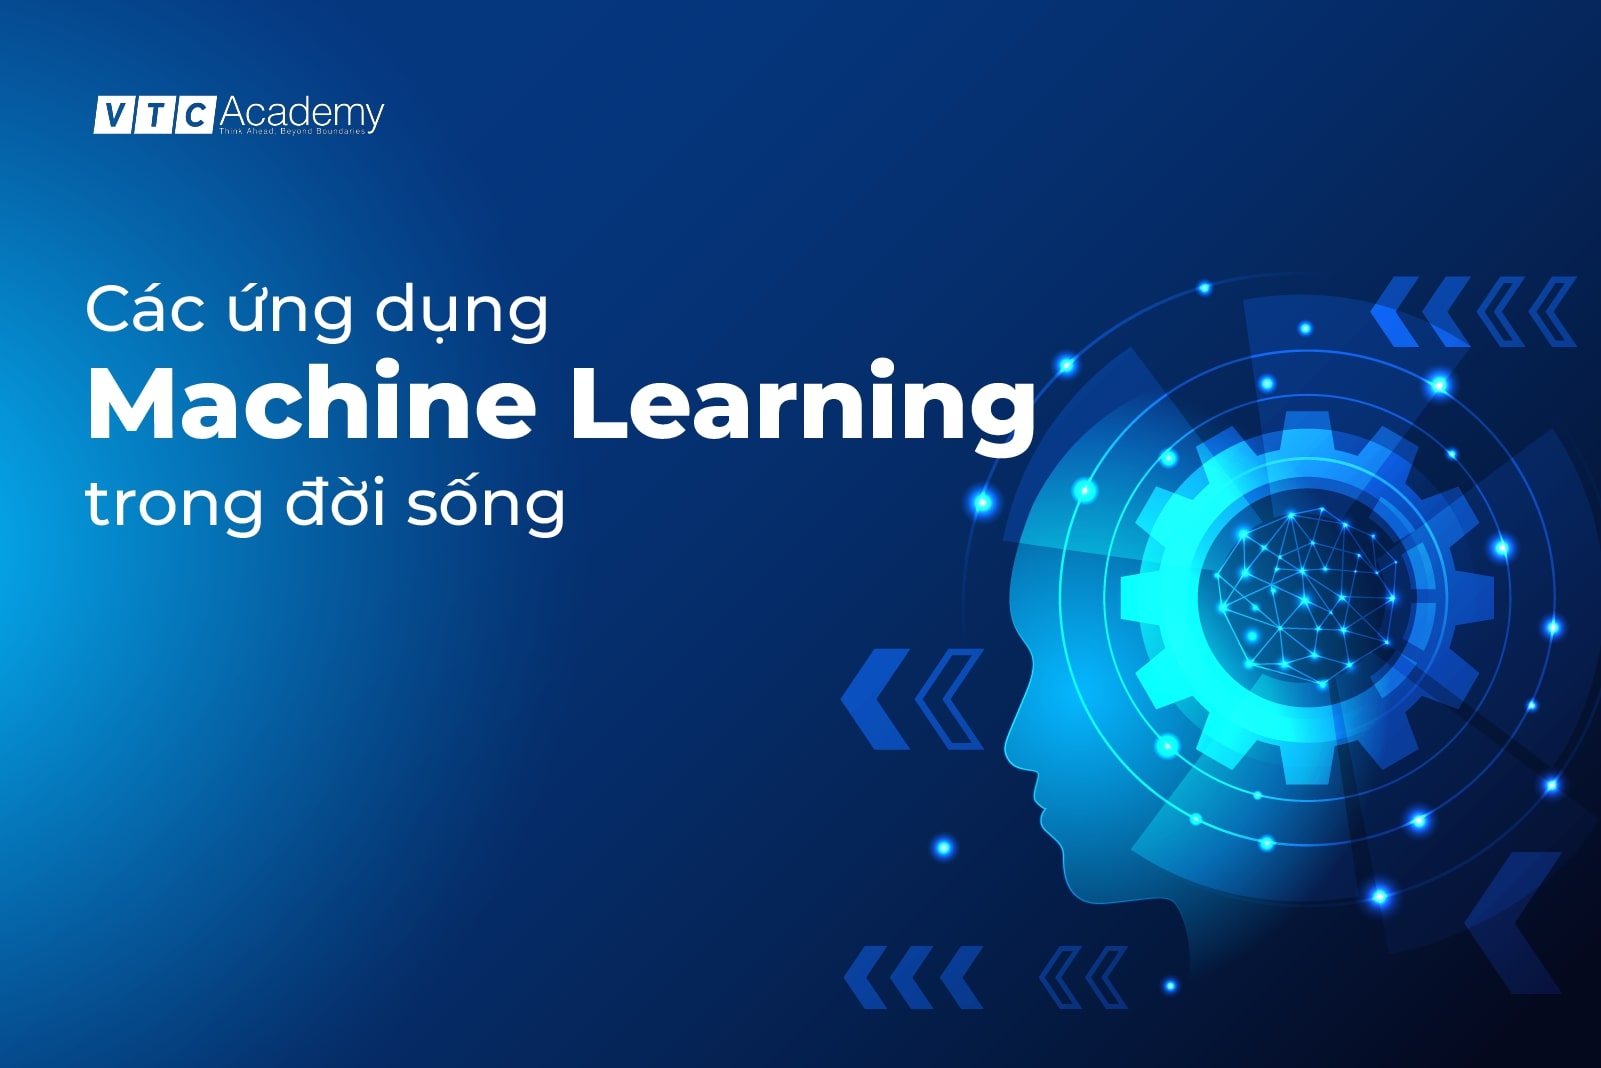 Machine Learning là gì? Cách ứng dụng của Machine Learning trong đời sống